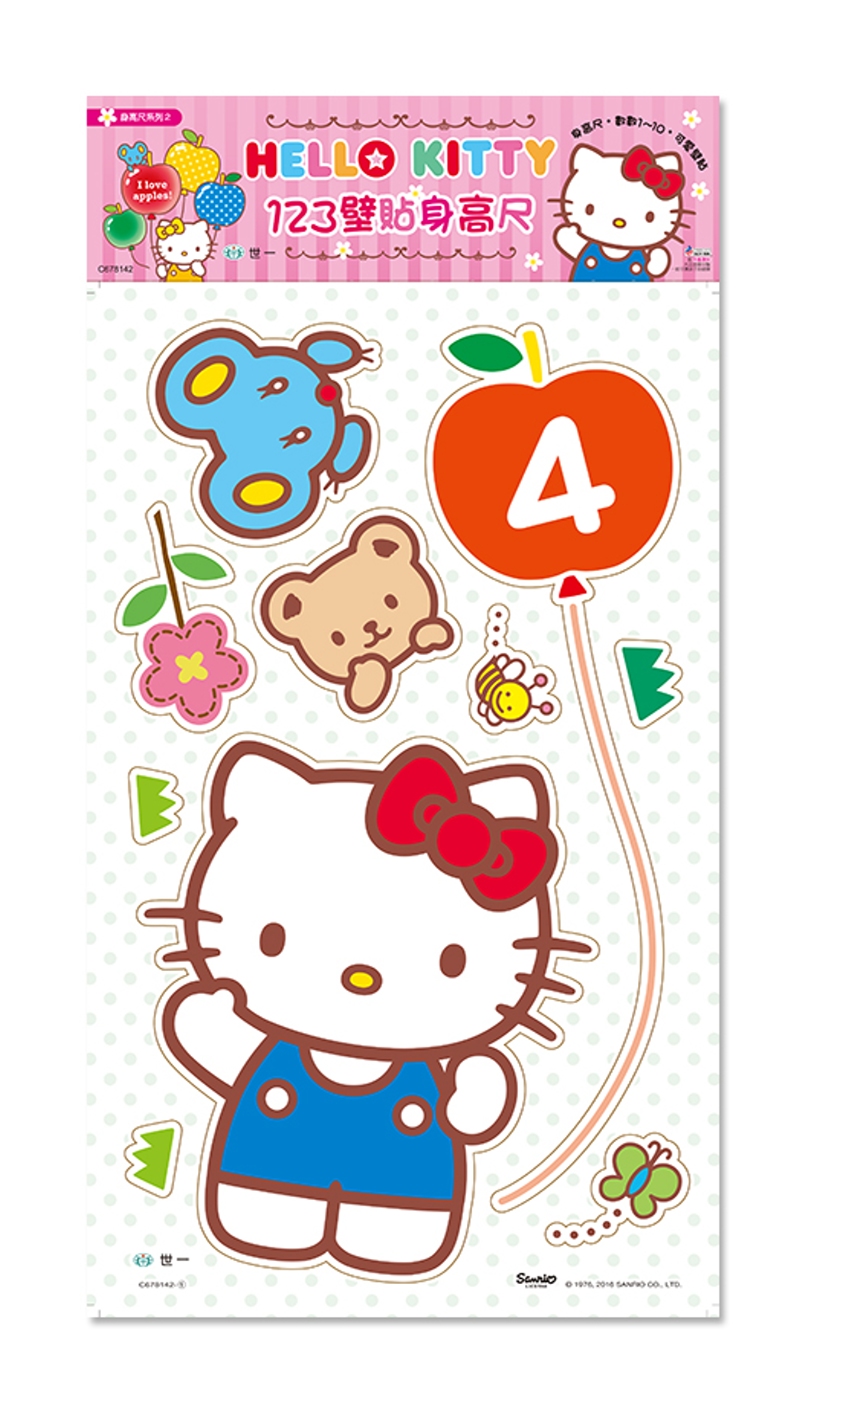 壁貼身高尺：Hello Kitty 123